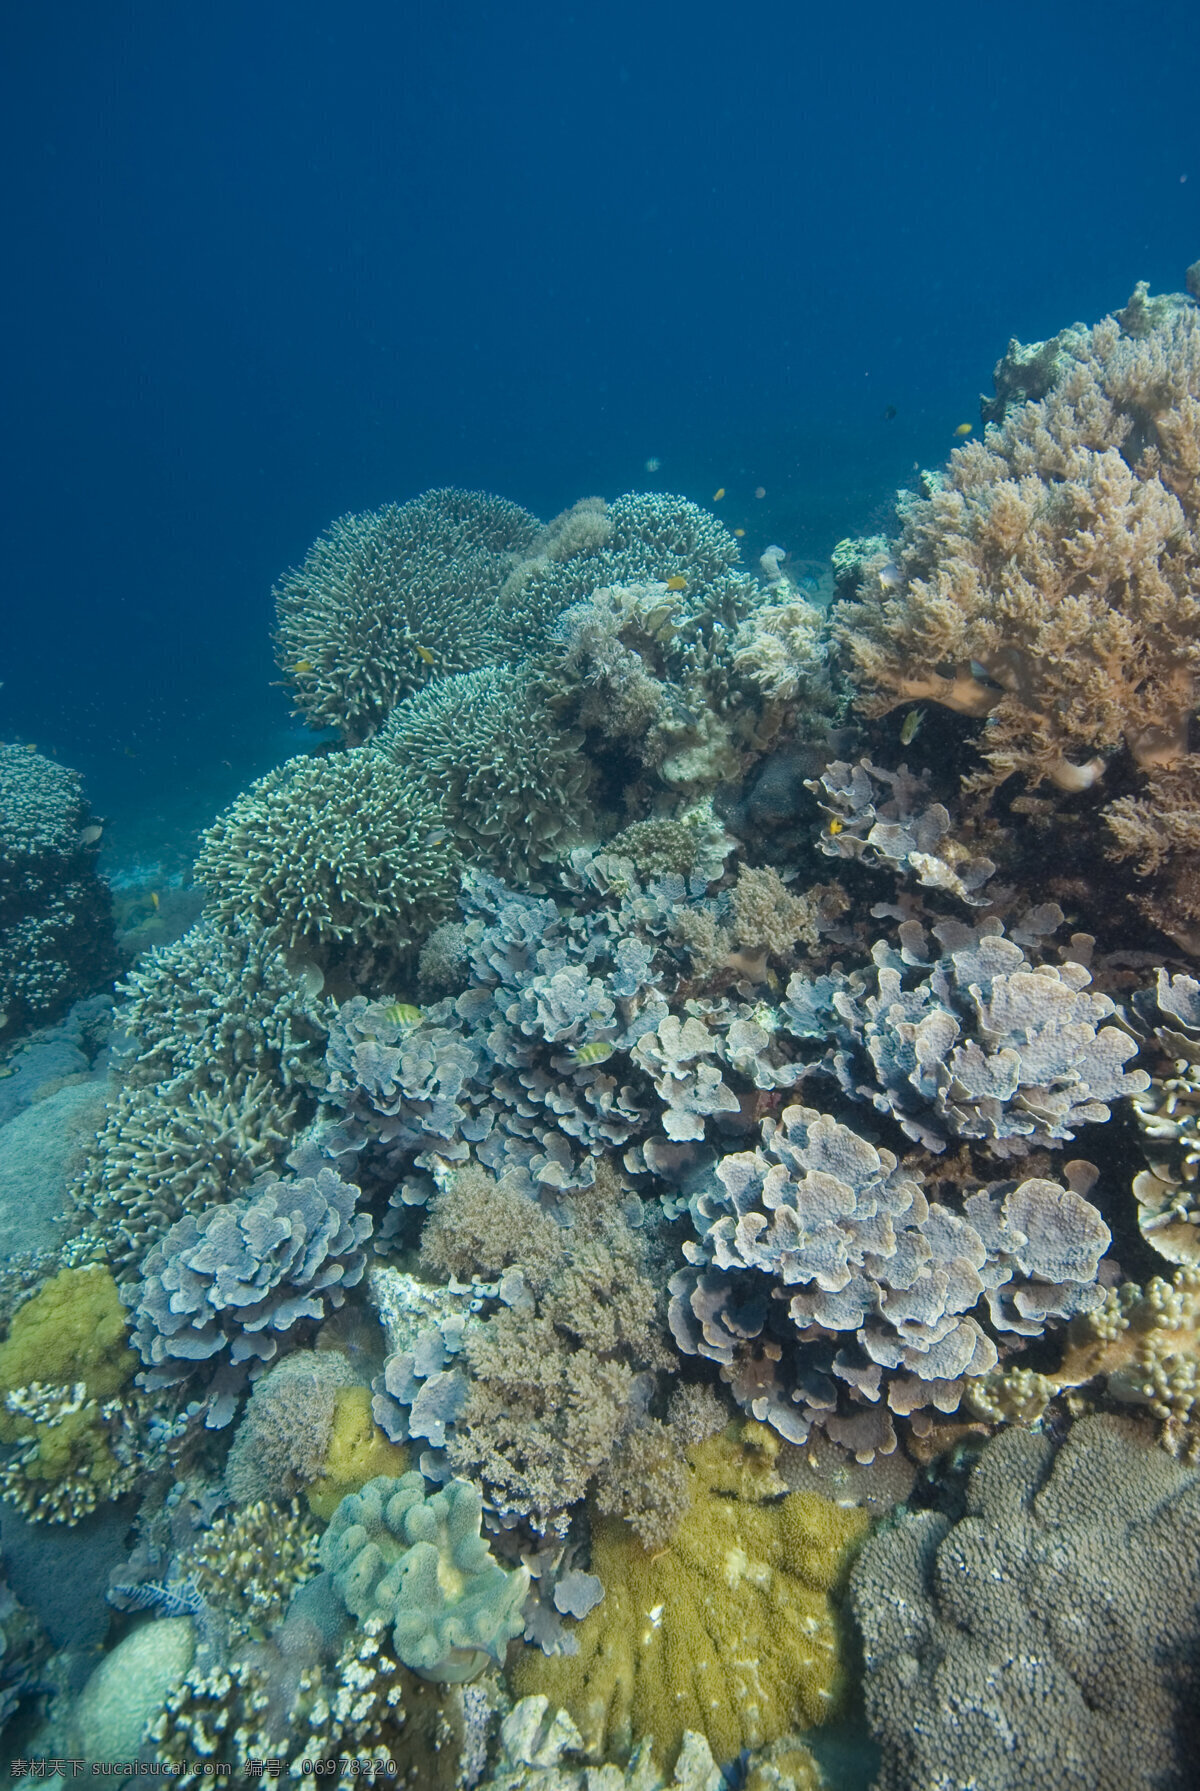 形态各异 珊瑚 海底摄影 海底世界 海底 海洋 大海 海中生物 自然界 珊瑚礁 大海图片 风景图片